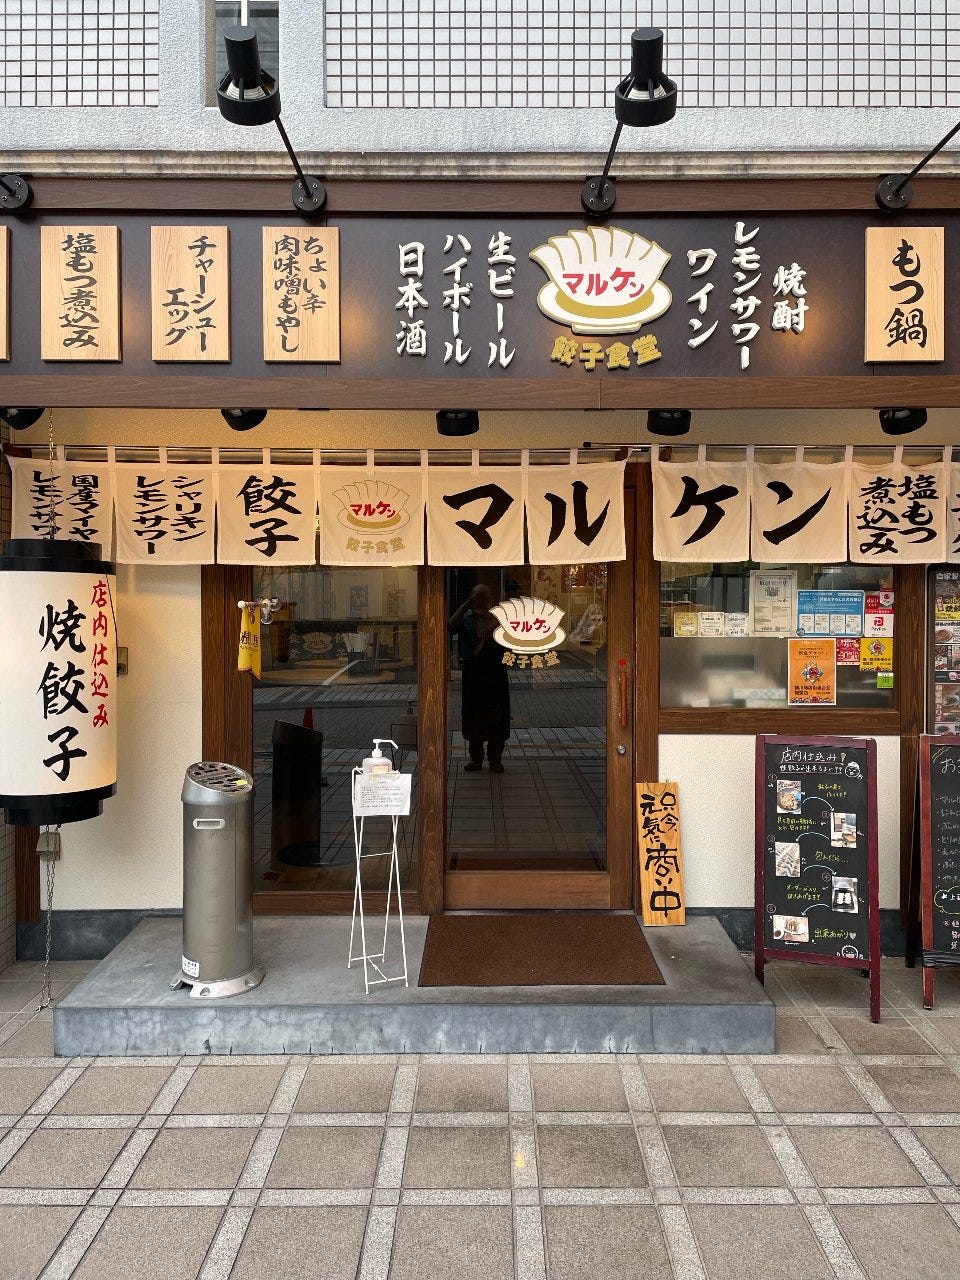 マルケン餃子食堂 横川店